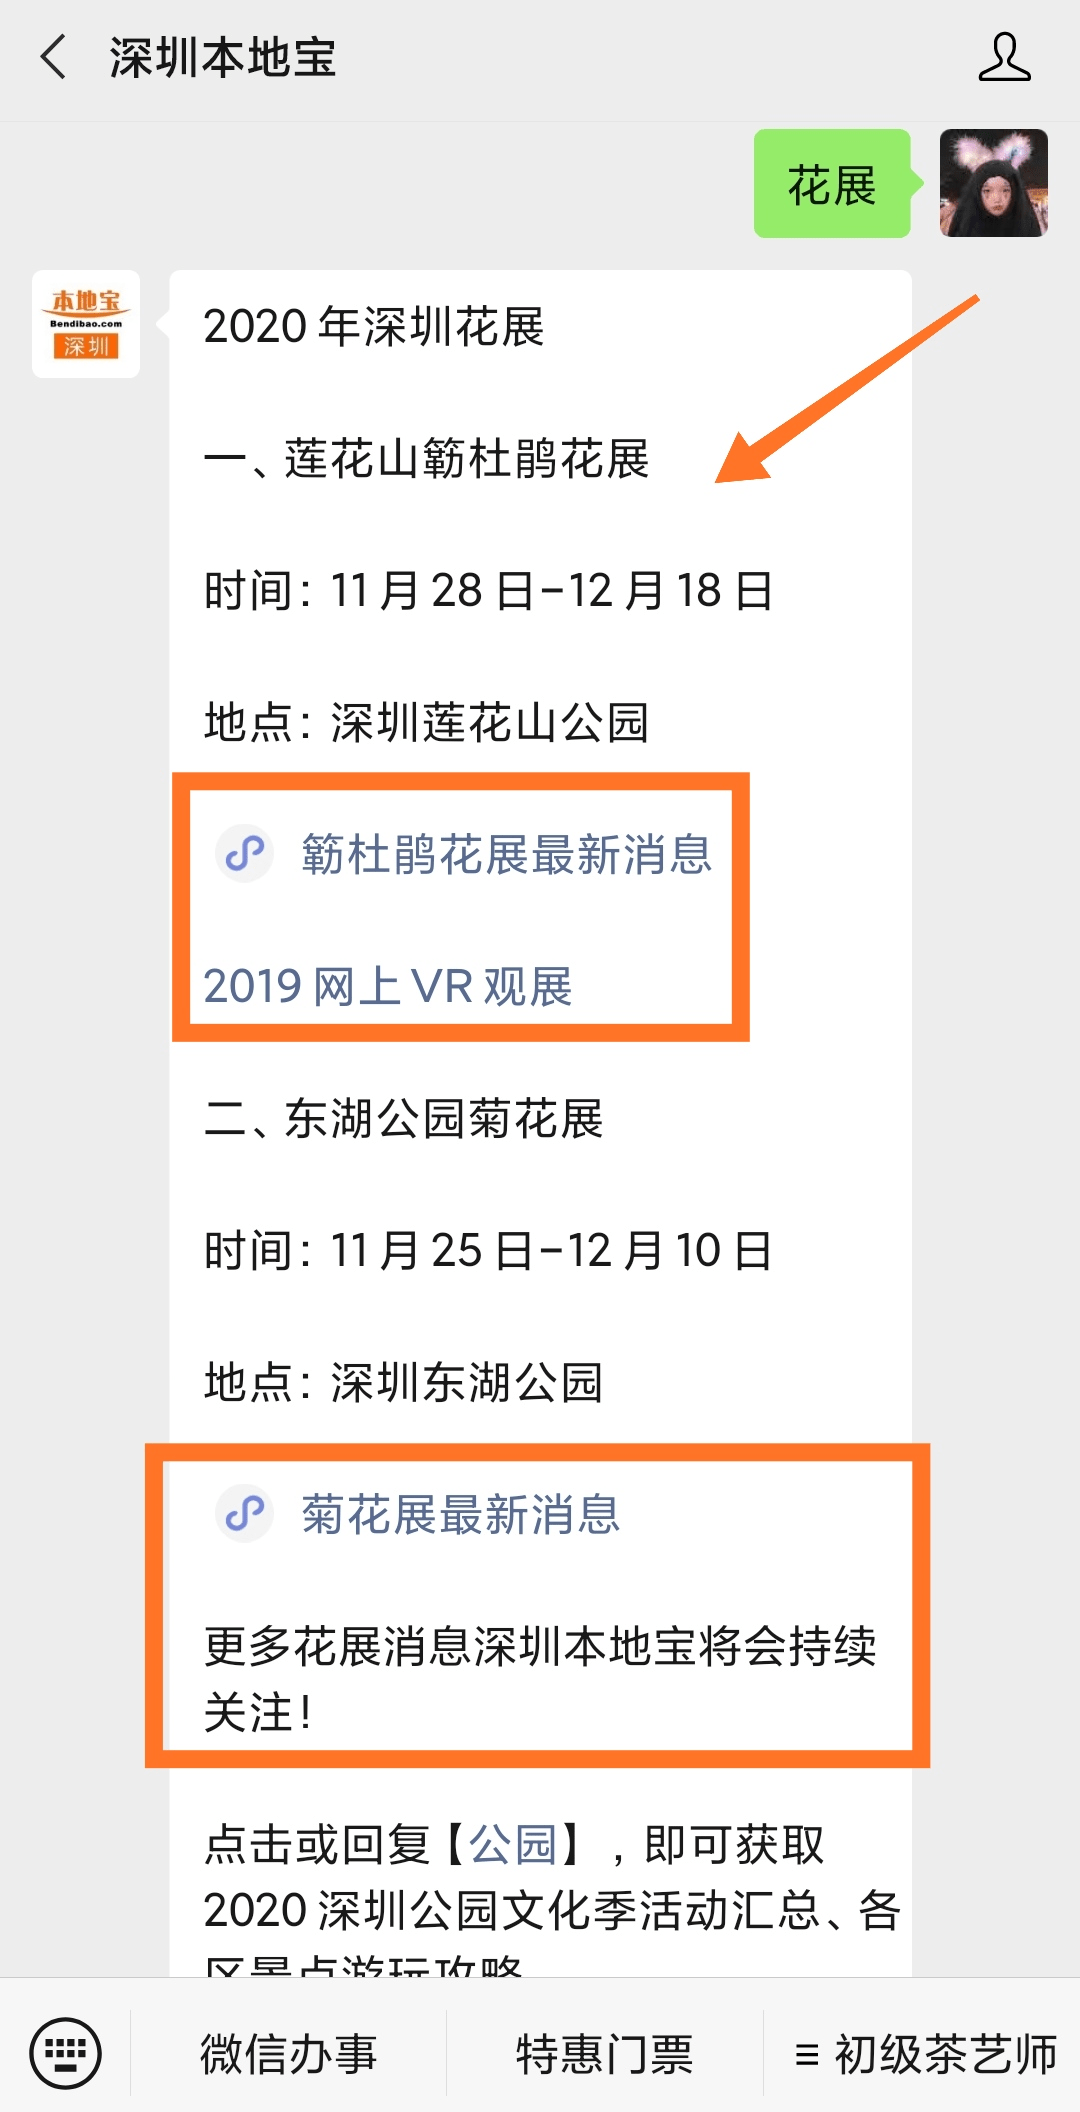 皇冠官网地址：
2020深圳菊花展什么时候开始